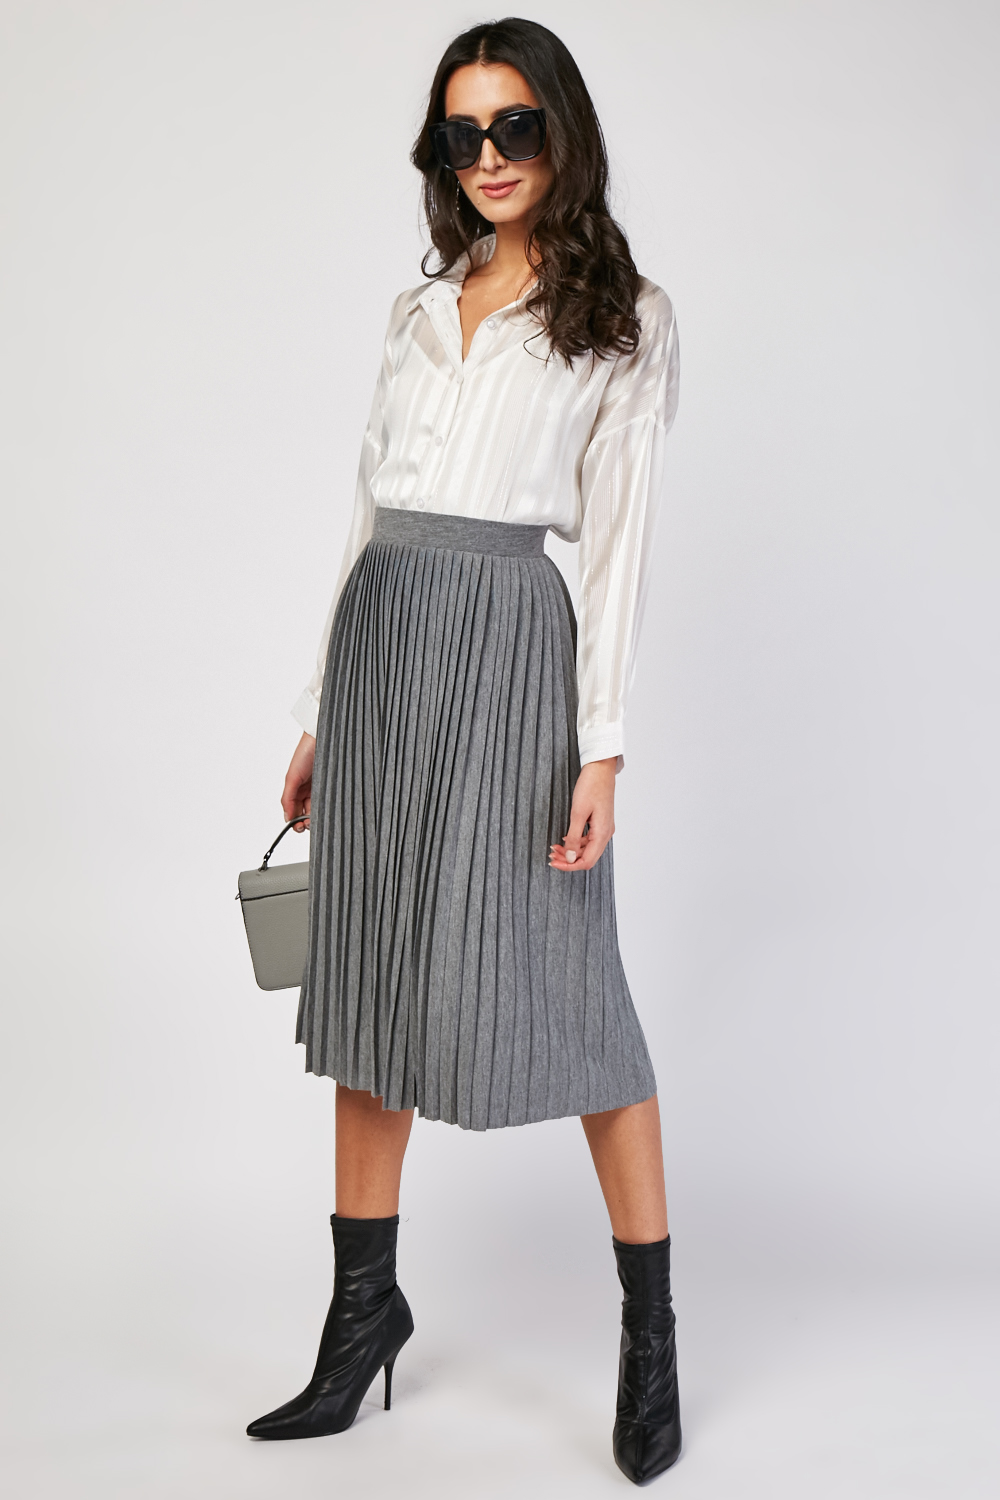 Grey Midi Pleated Skirt - Just $7